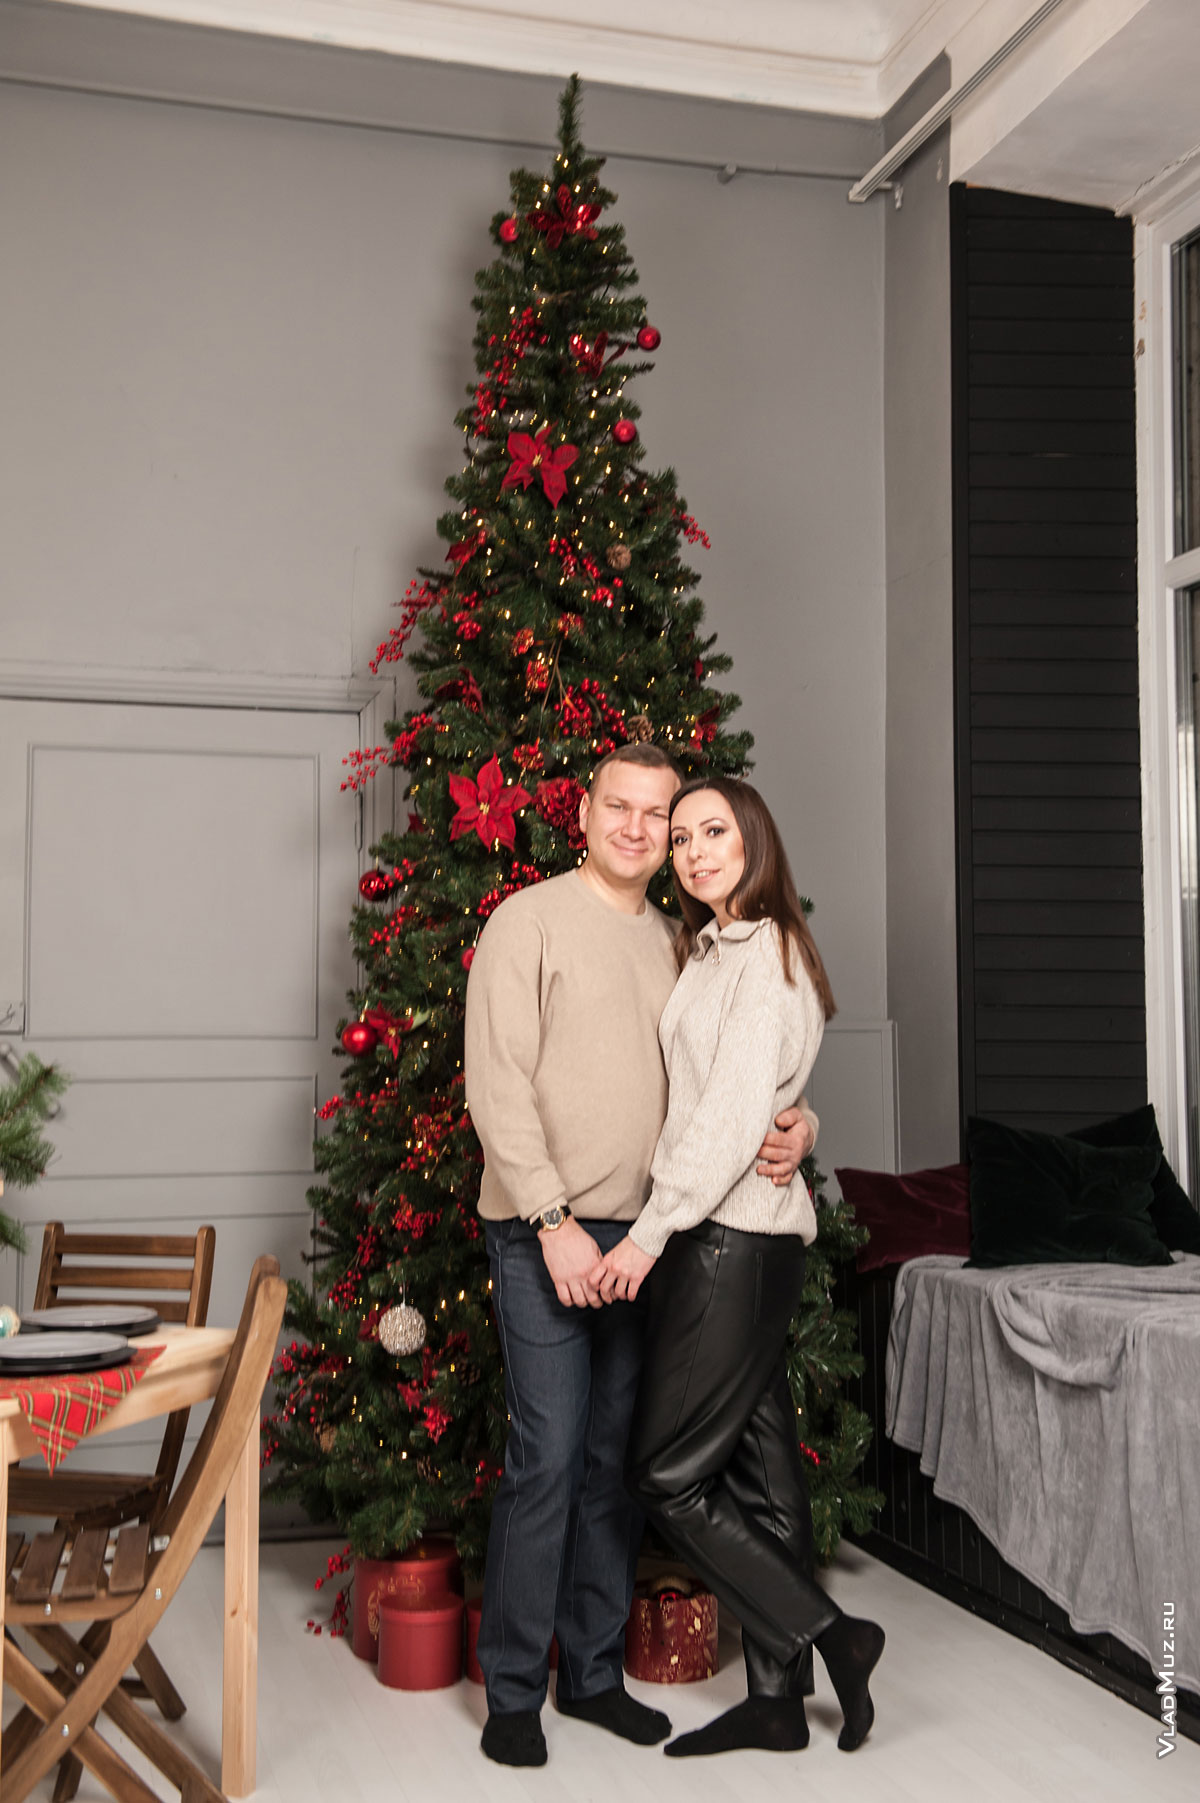 Фото мужчины с девушкой у новогодней елки